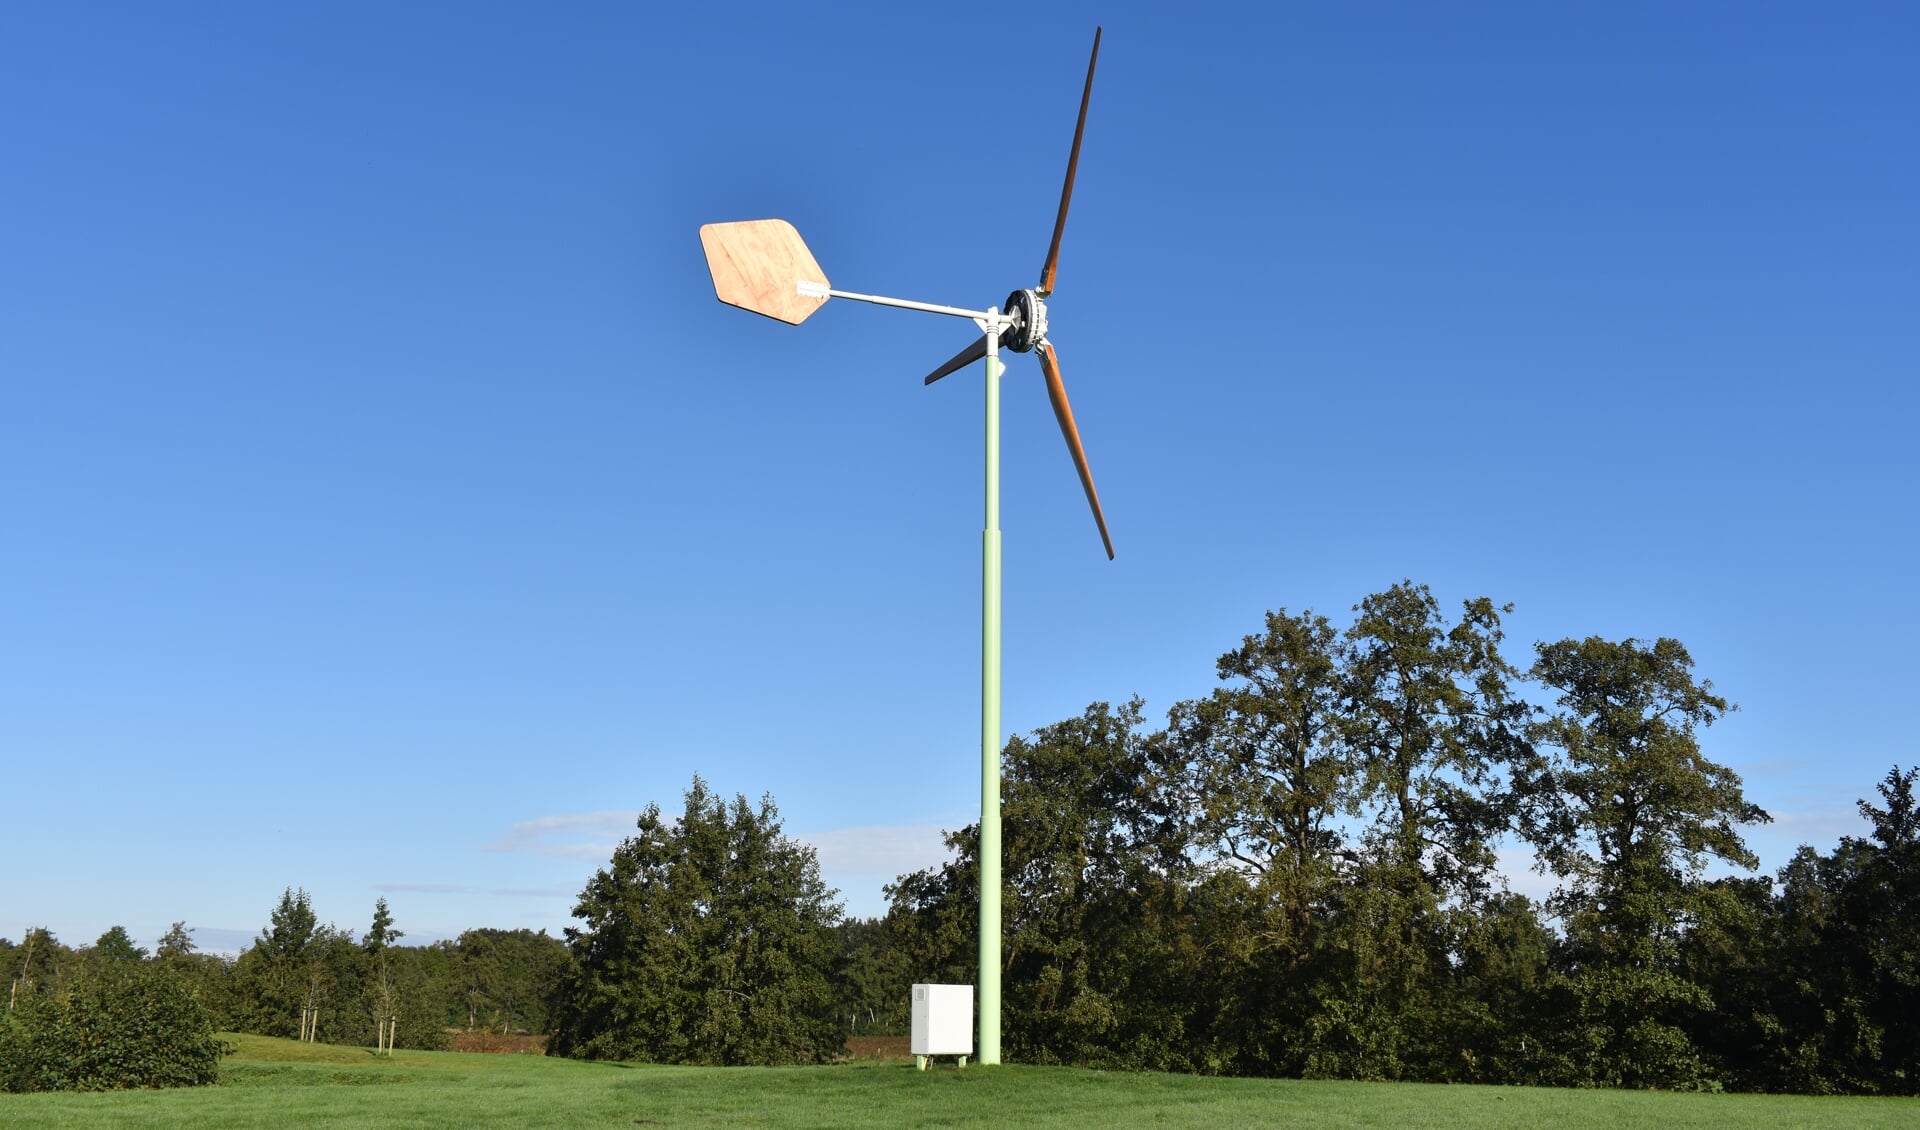 Kleine windturbine van EAZ Wind. De wieken en de 'staart' zijn van hout, de as-hoogte is maximaal 15 meter.